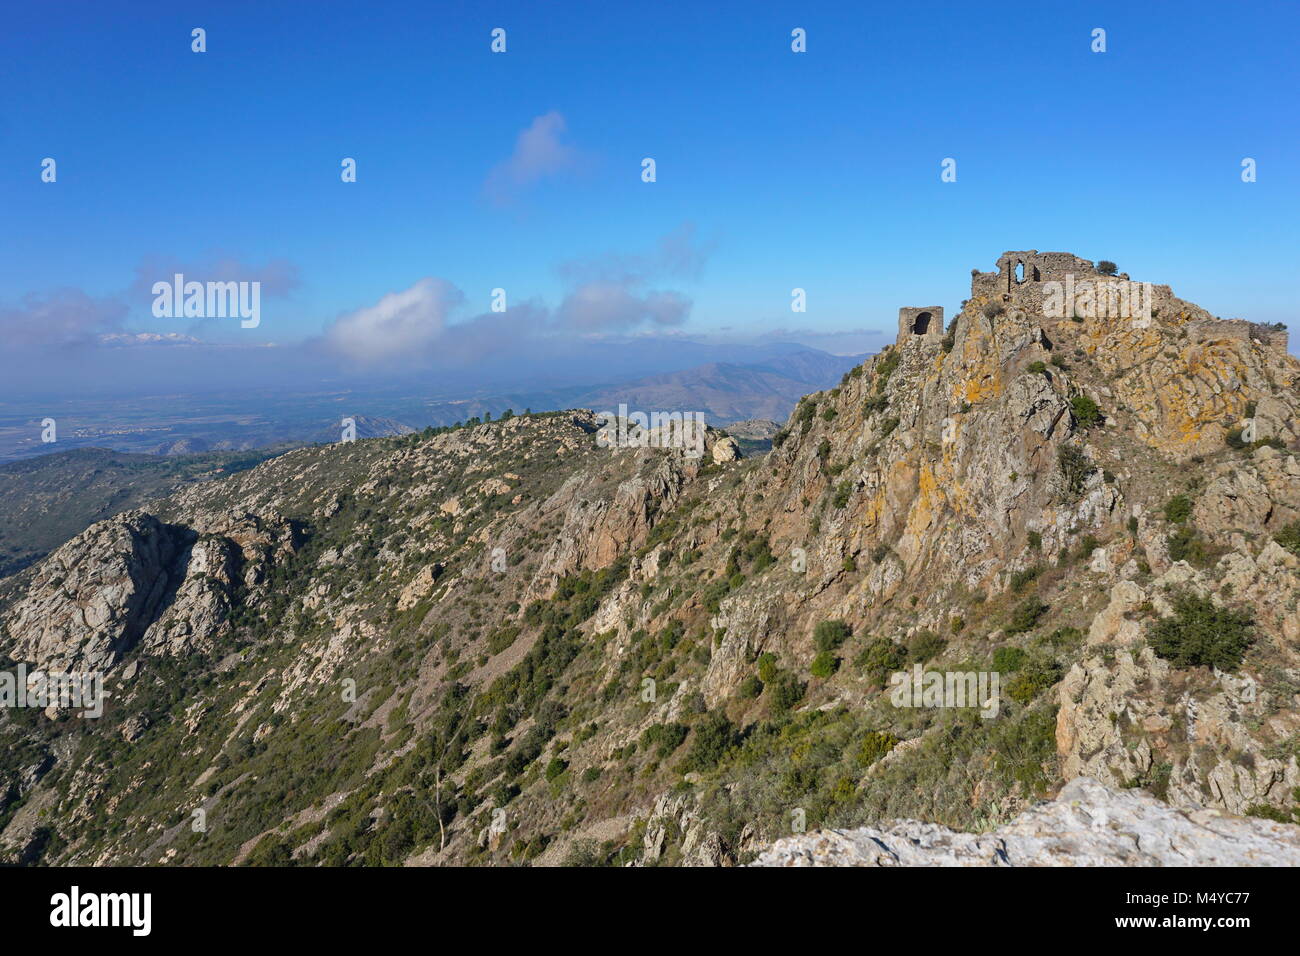 Paysage du haut de Sant Salvador Saverdera montagne avec les ruines du château de Verdera, Espagne, Catalogne, Gérone, Alt Emporda Banque D'Images